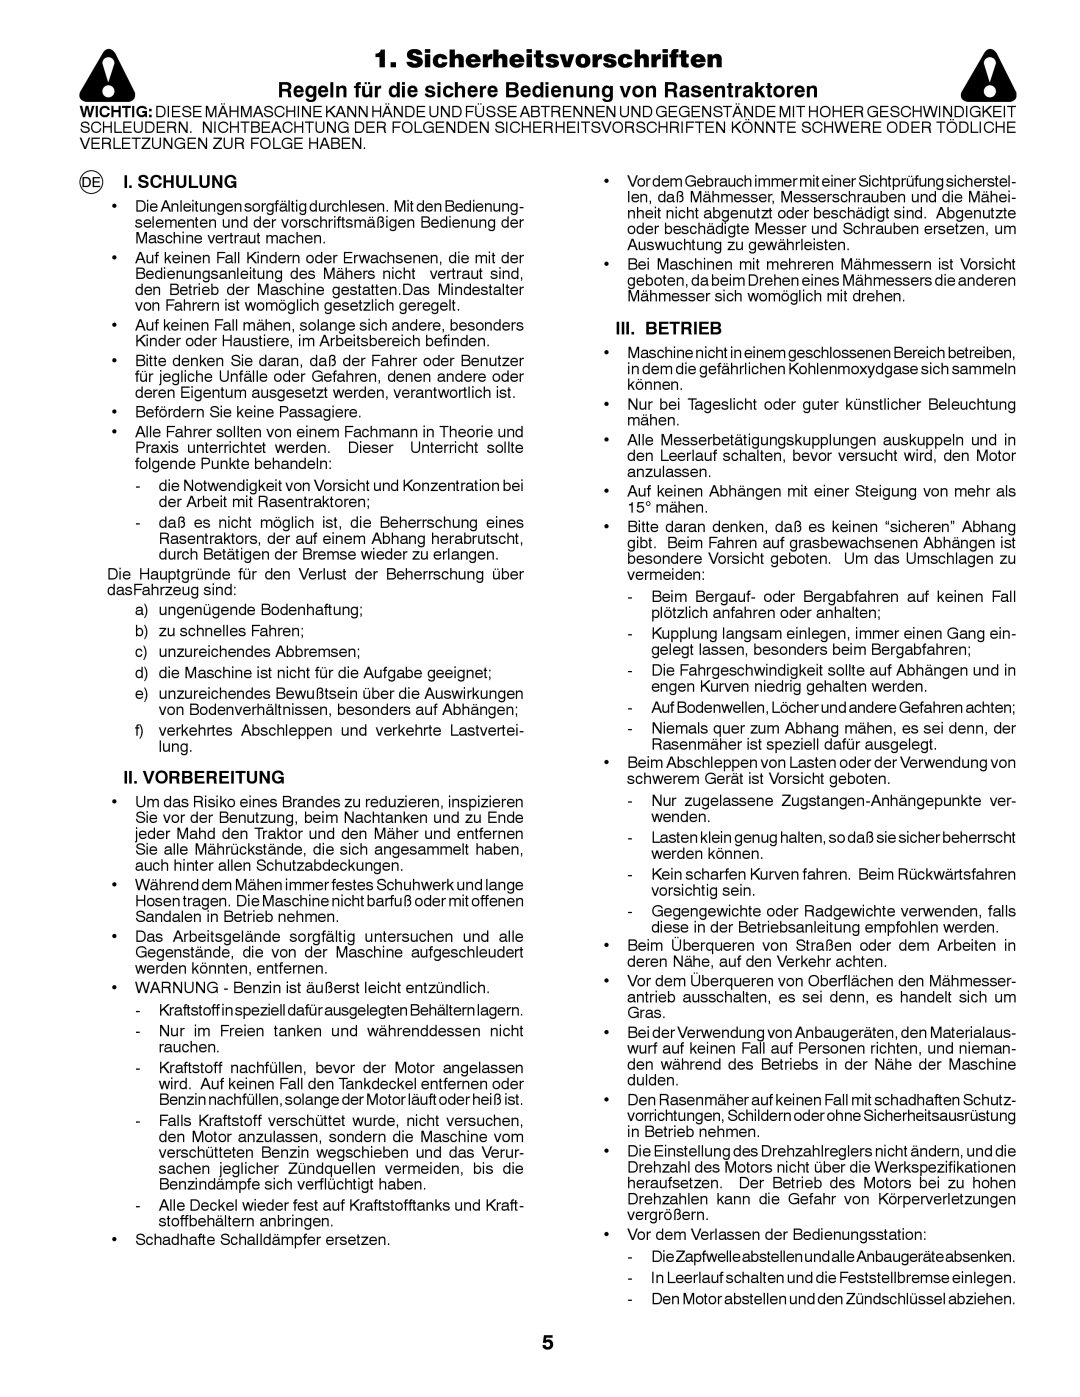 McCulloch 96041016500 Sicherheitsvorschriften, Regeln für die sichere Bedienung von Rasentraktoren, I. Schulung 